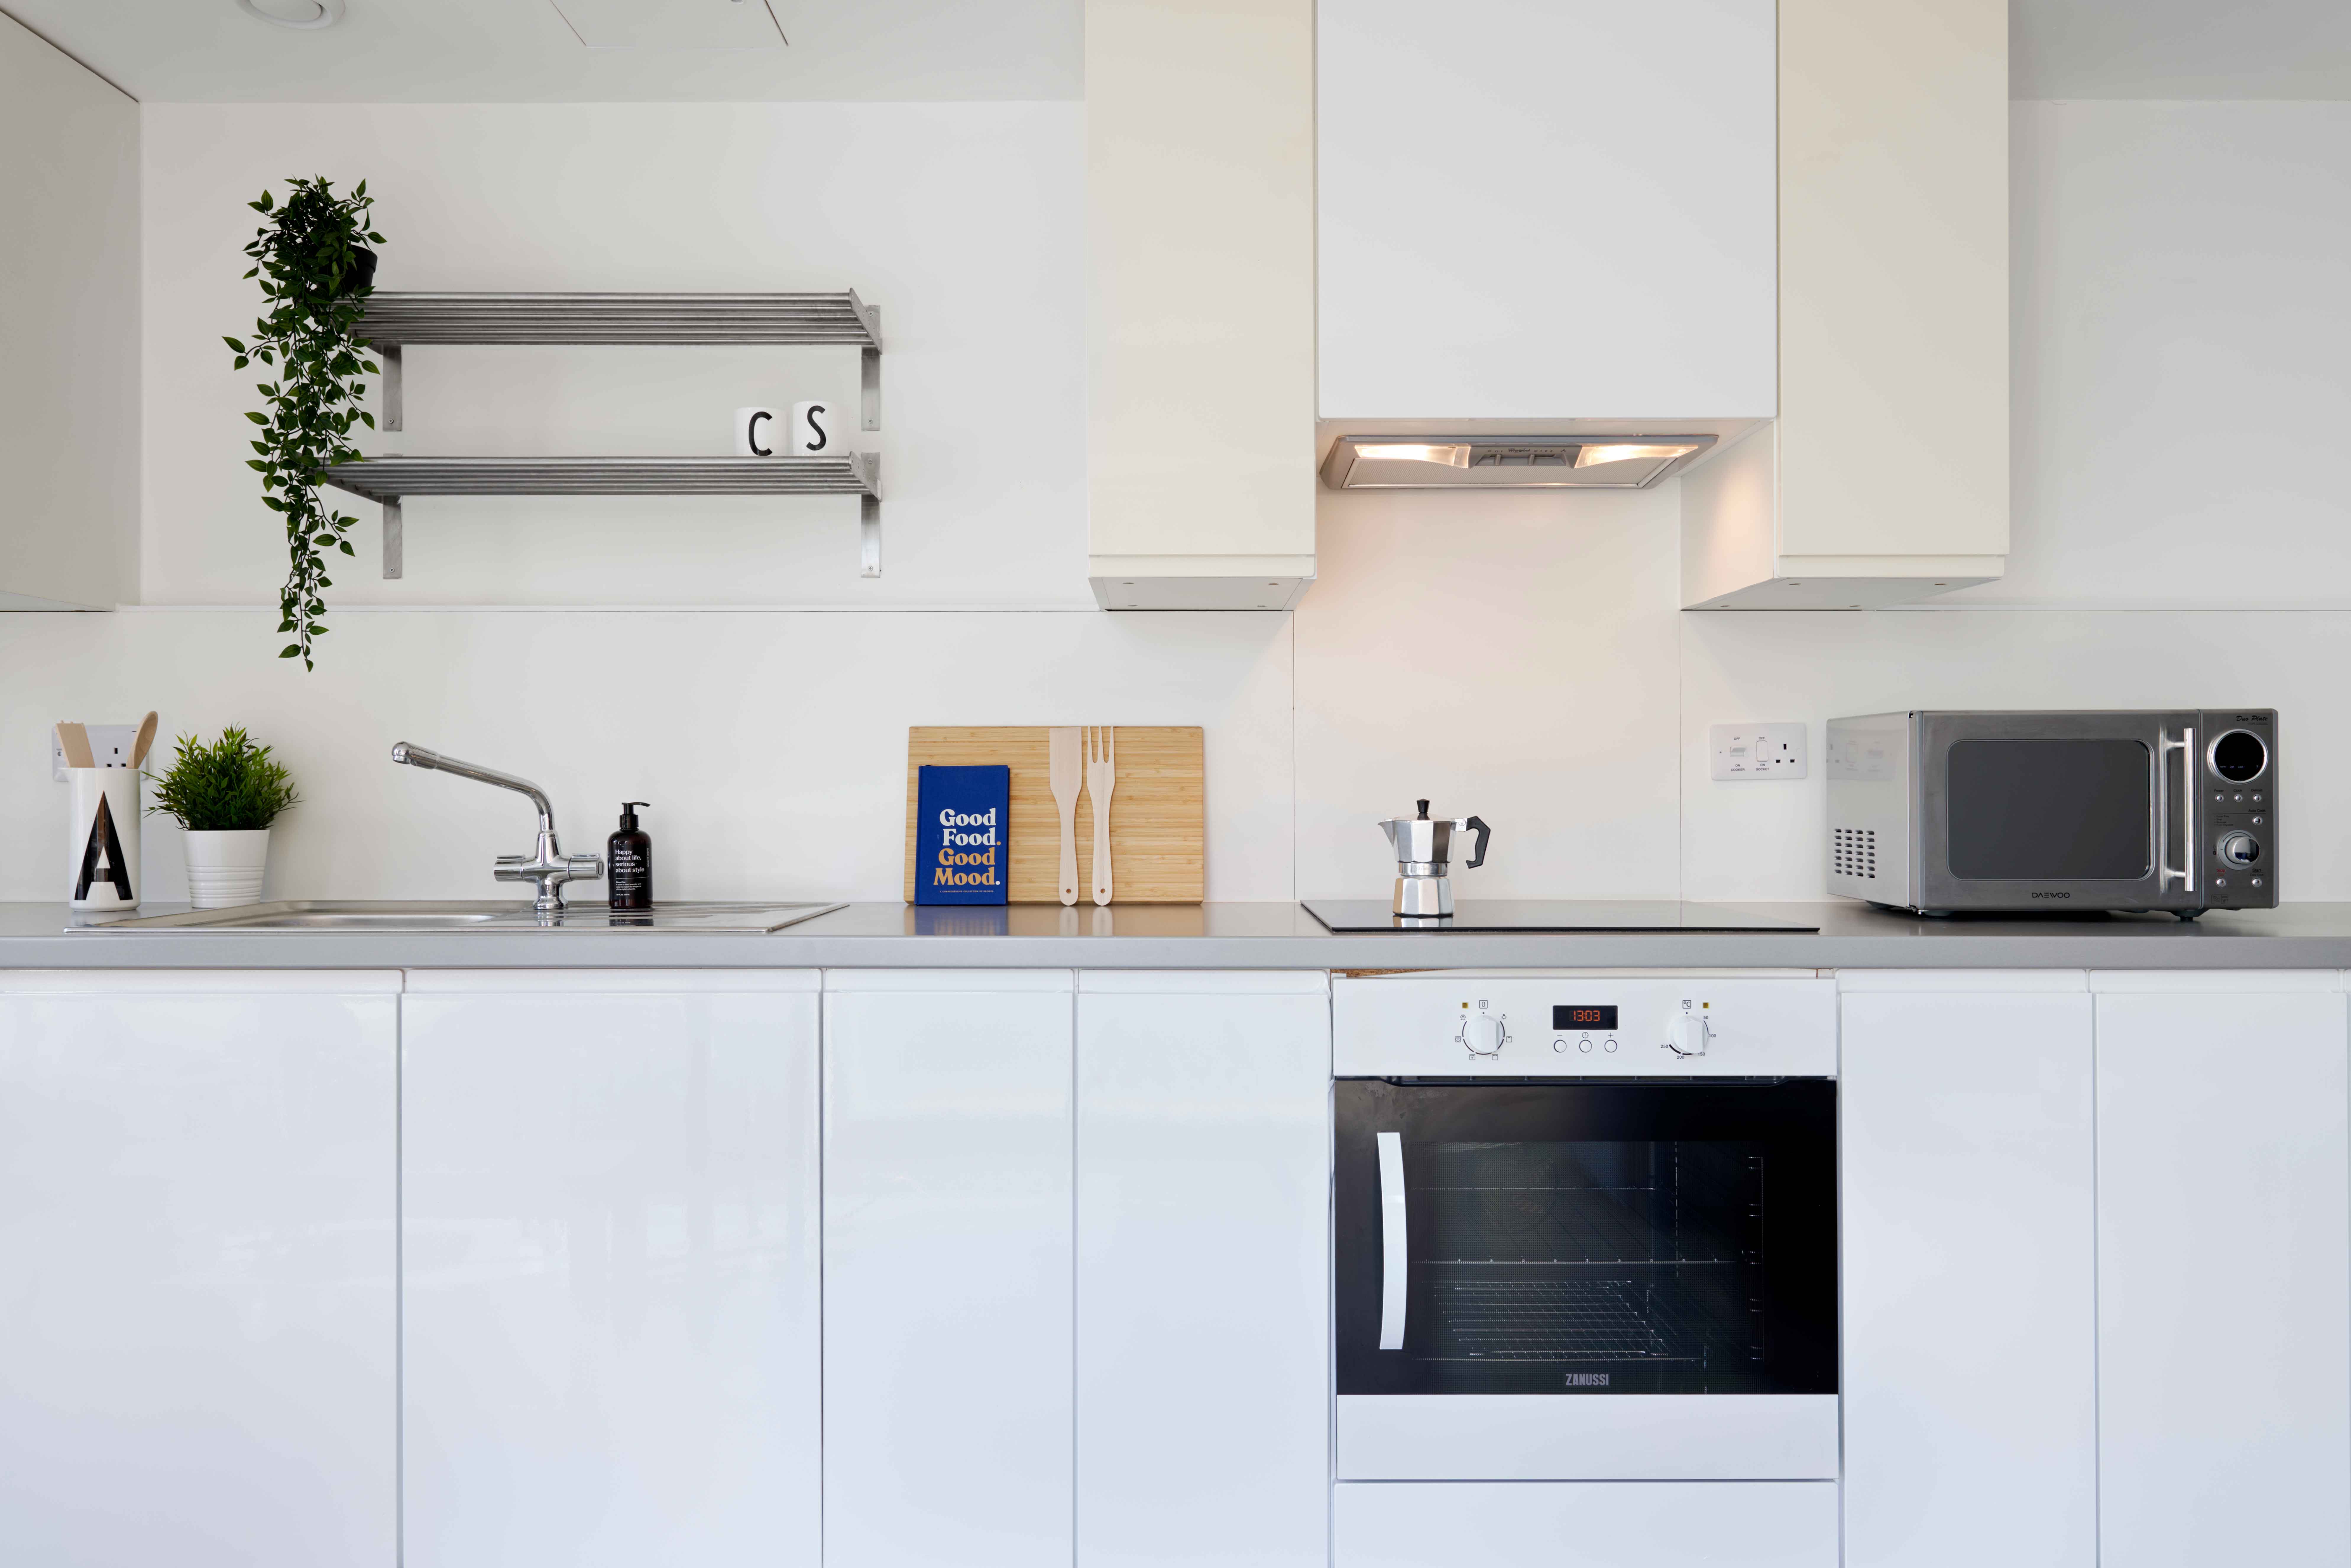 Southampton student accommodation shared kitchen